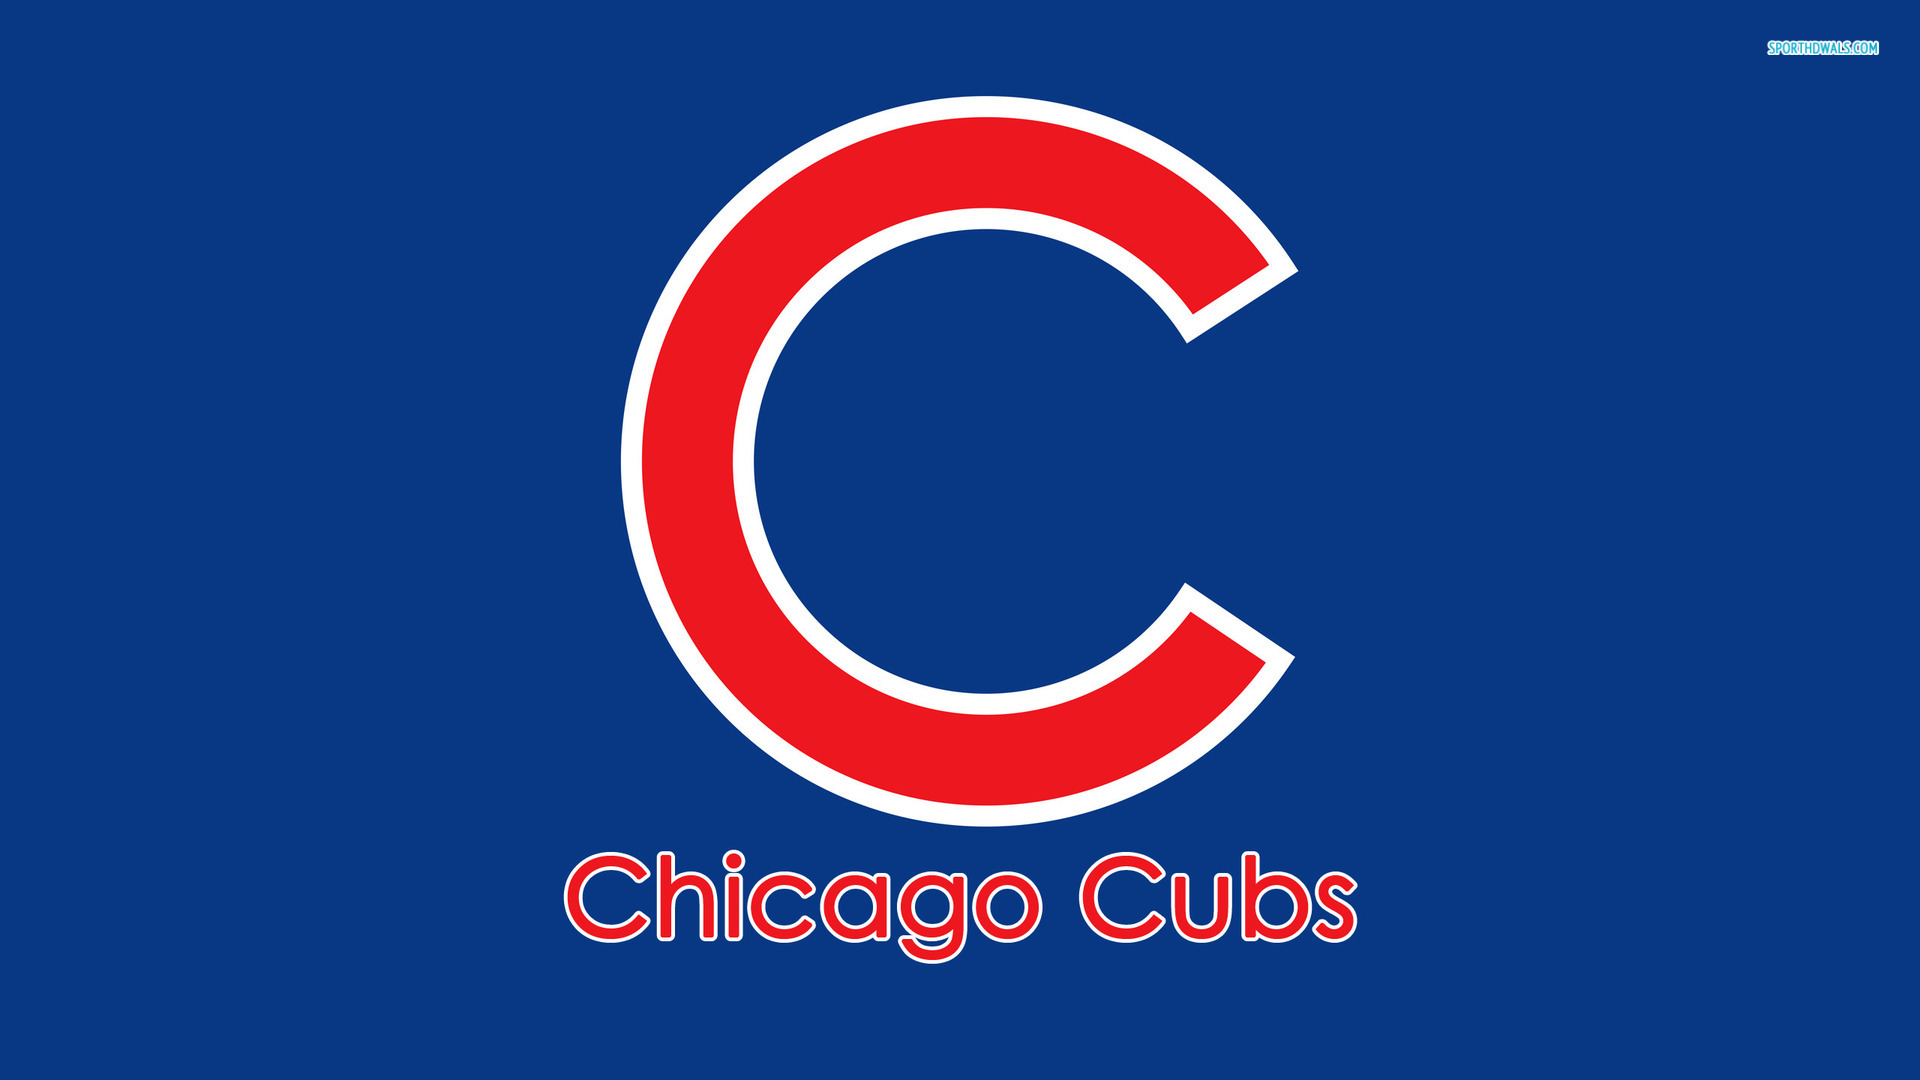  Chicago Cubs wallpaper Chicago Cubs wallpapers 1920x1080